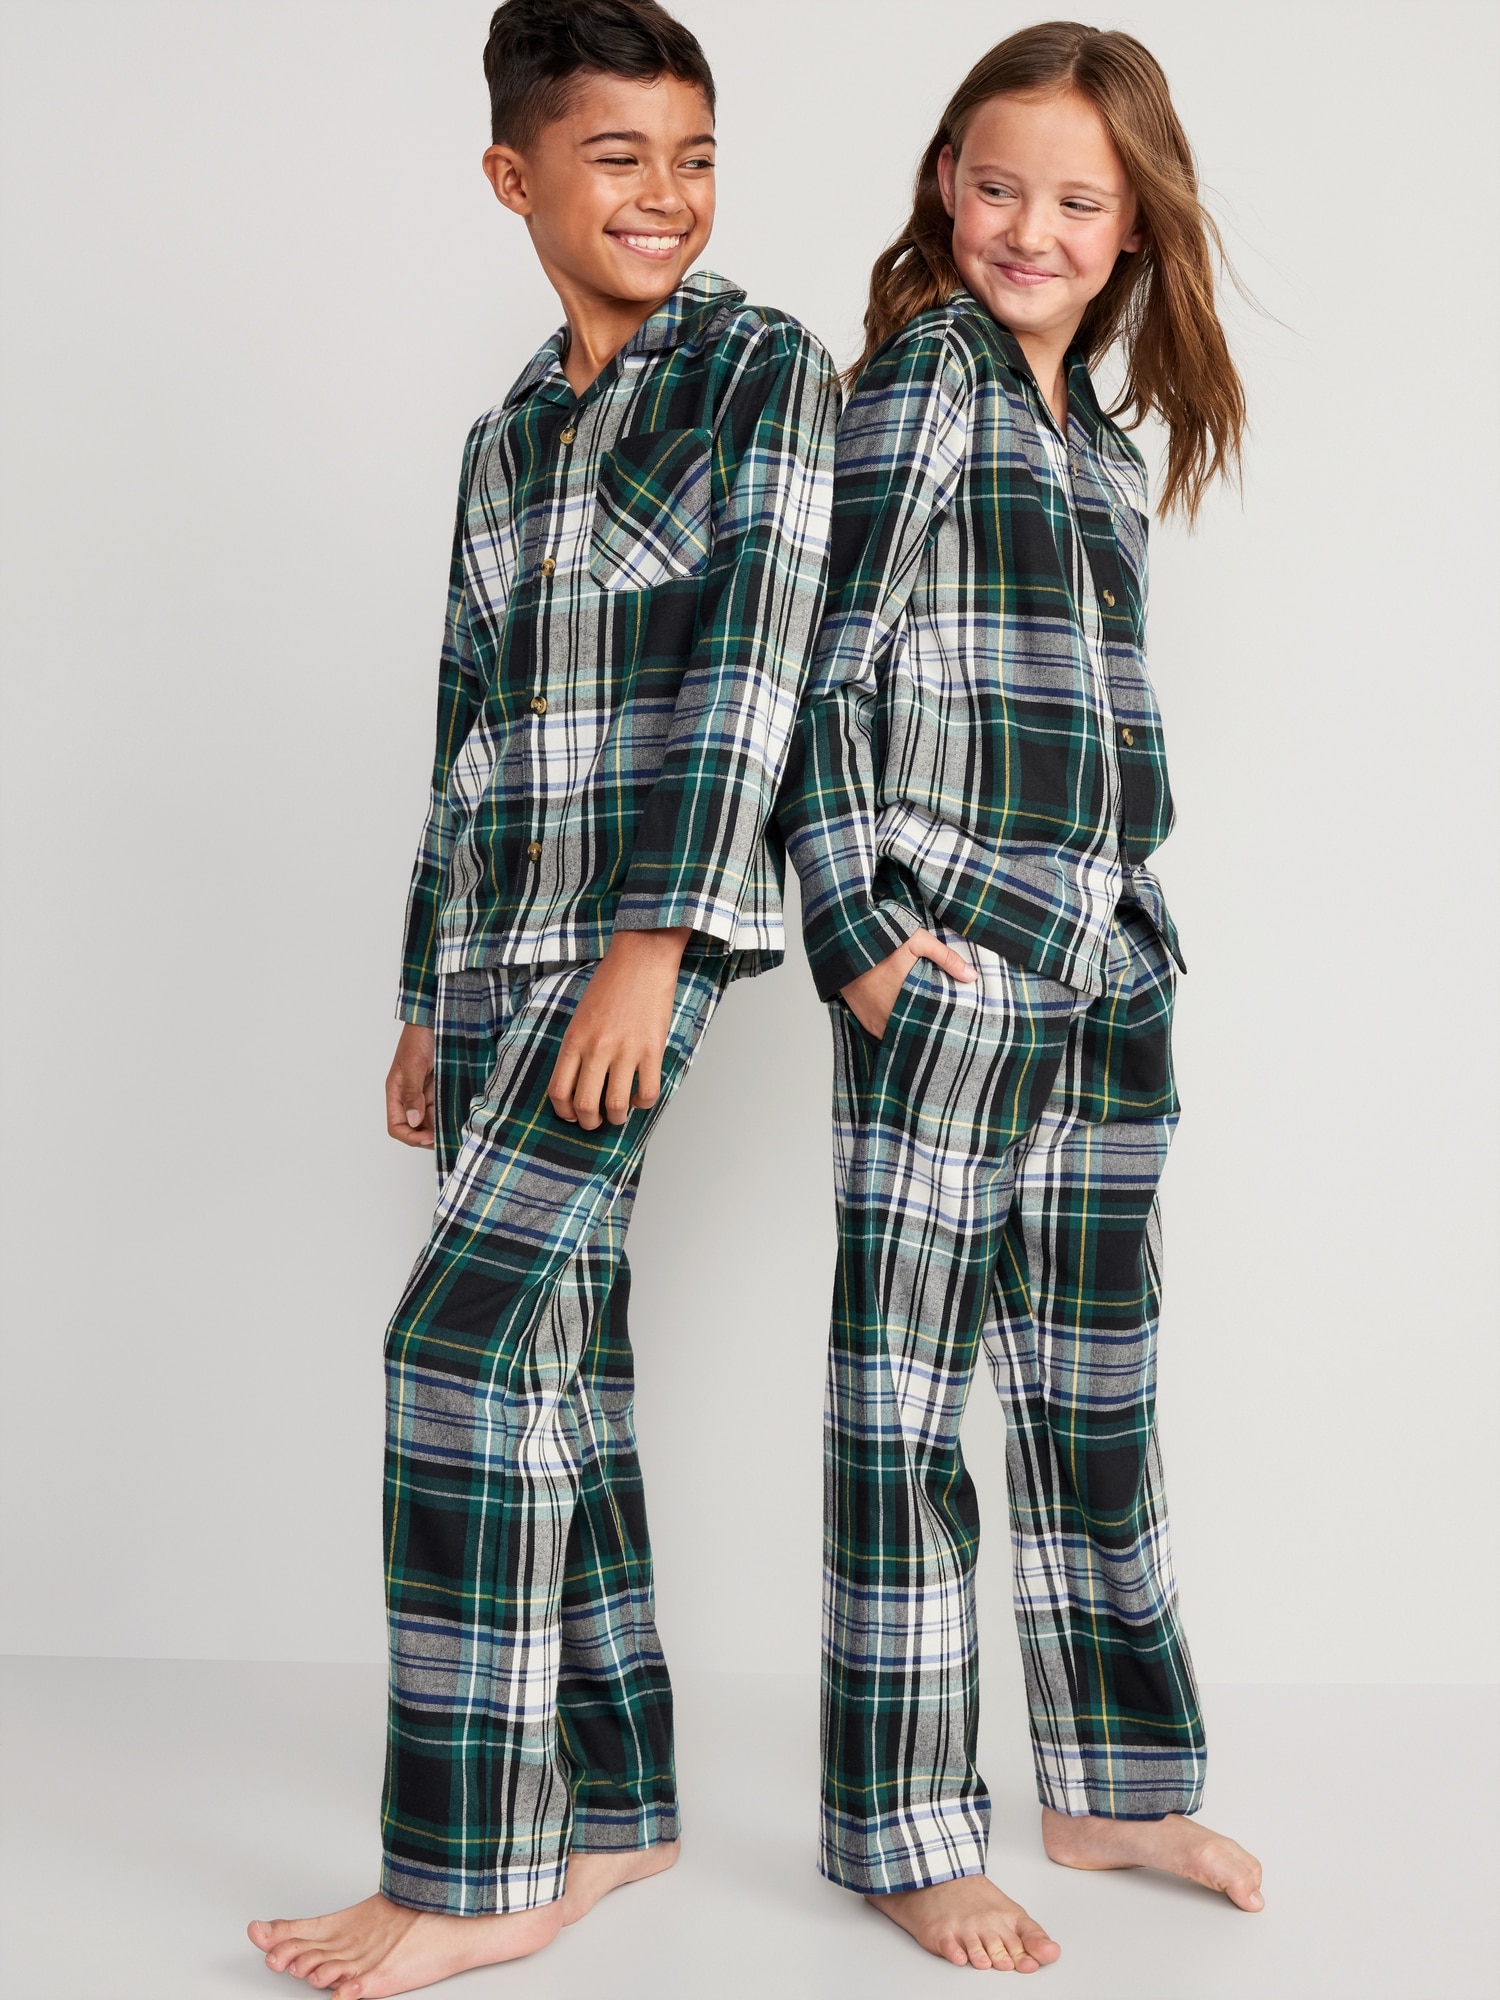 kids sleepwear winter 100% cotton flannel